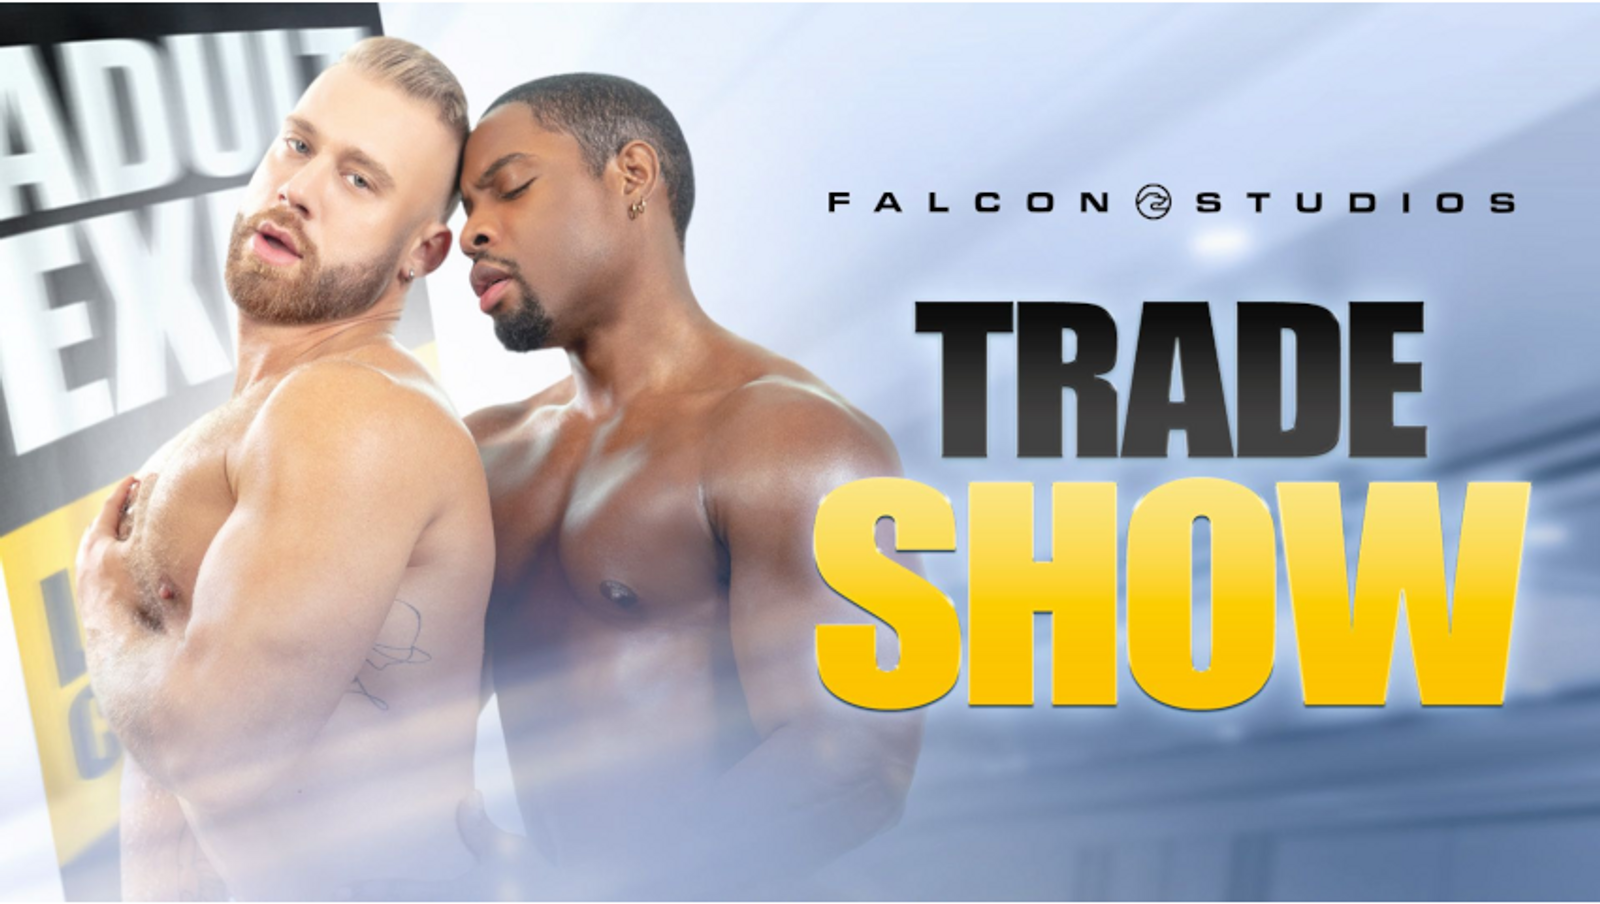 Trade show falcon studios